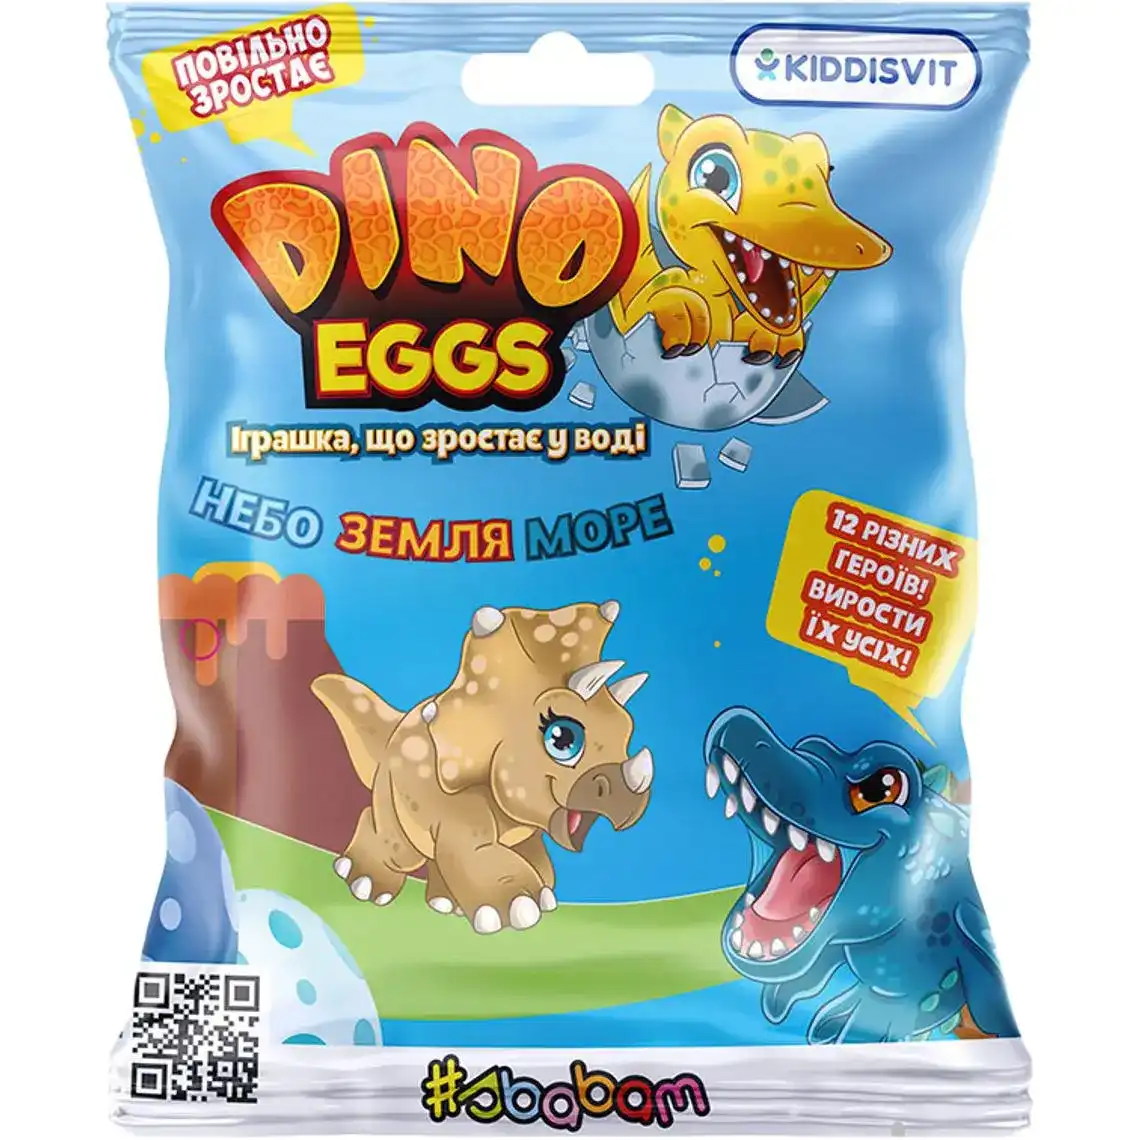 Іграшка, що зростає, в яйці Dino Eggs - динозаври неба, землі, моря в асортименті